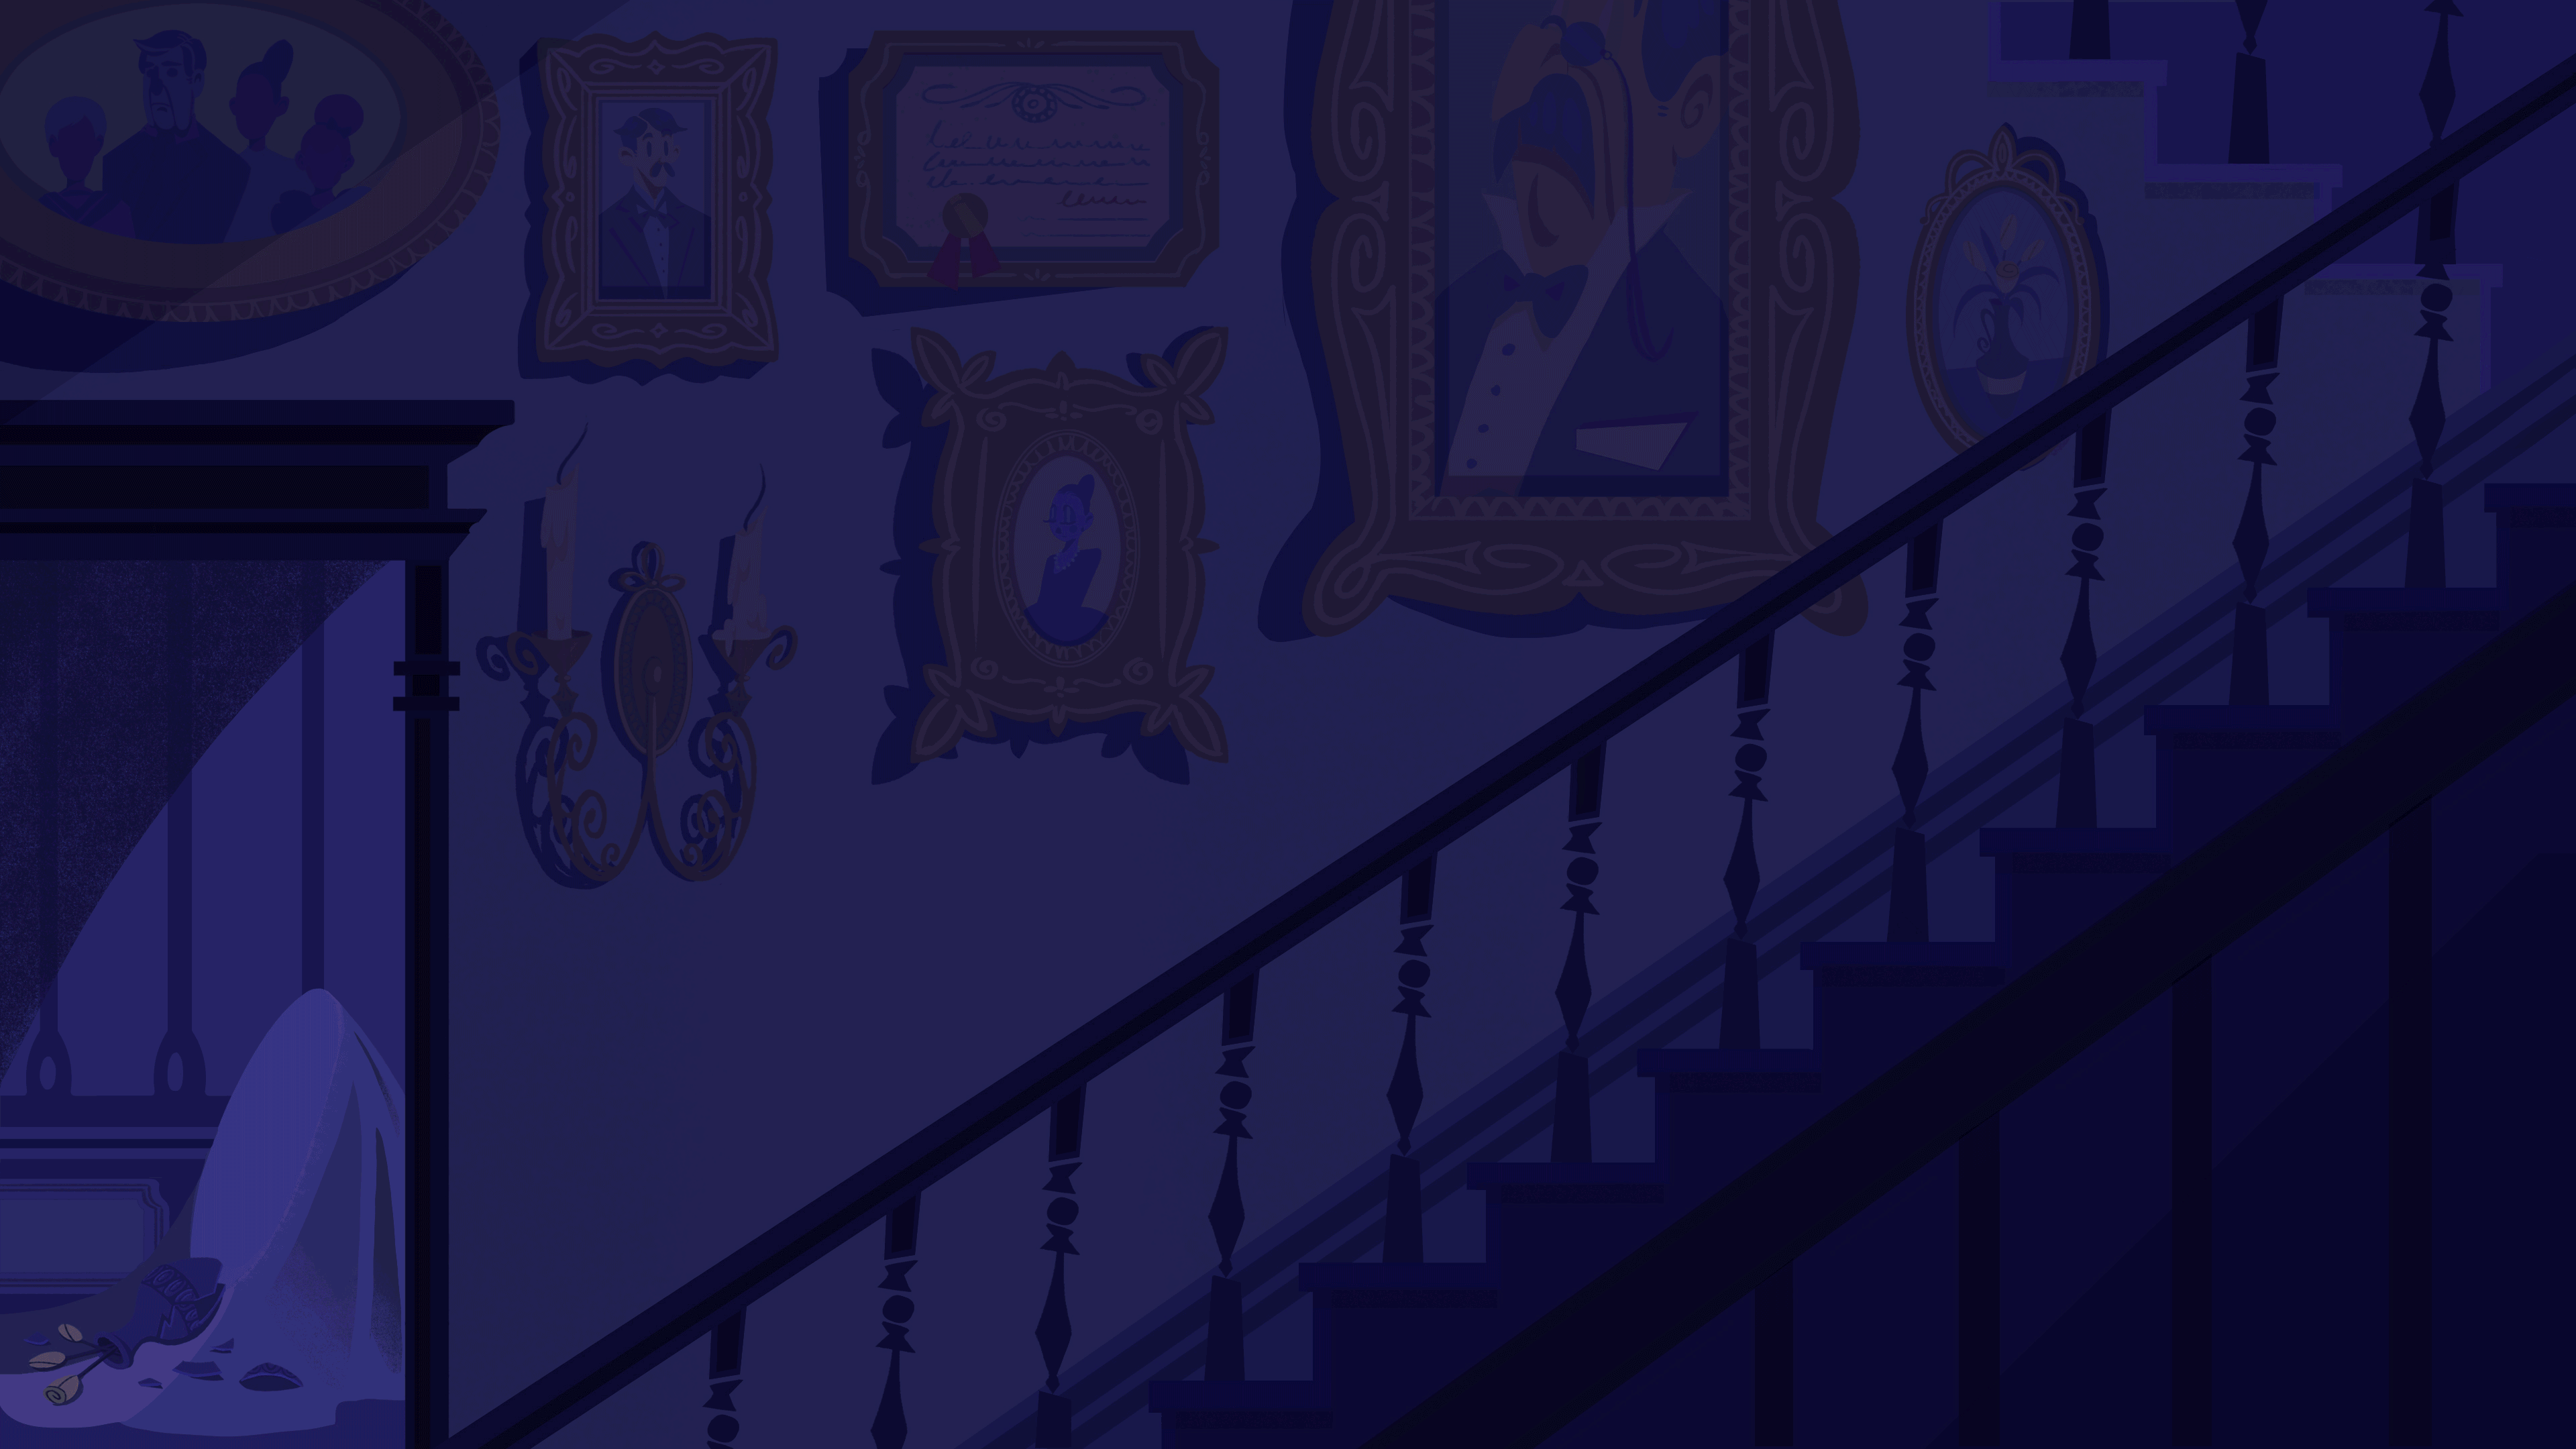 ArtStation - Haunted House - Animation Background